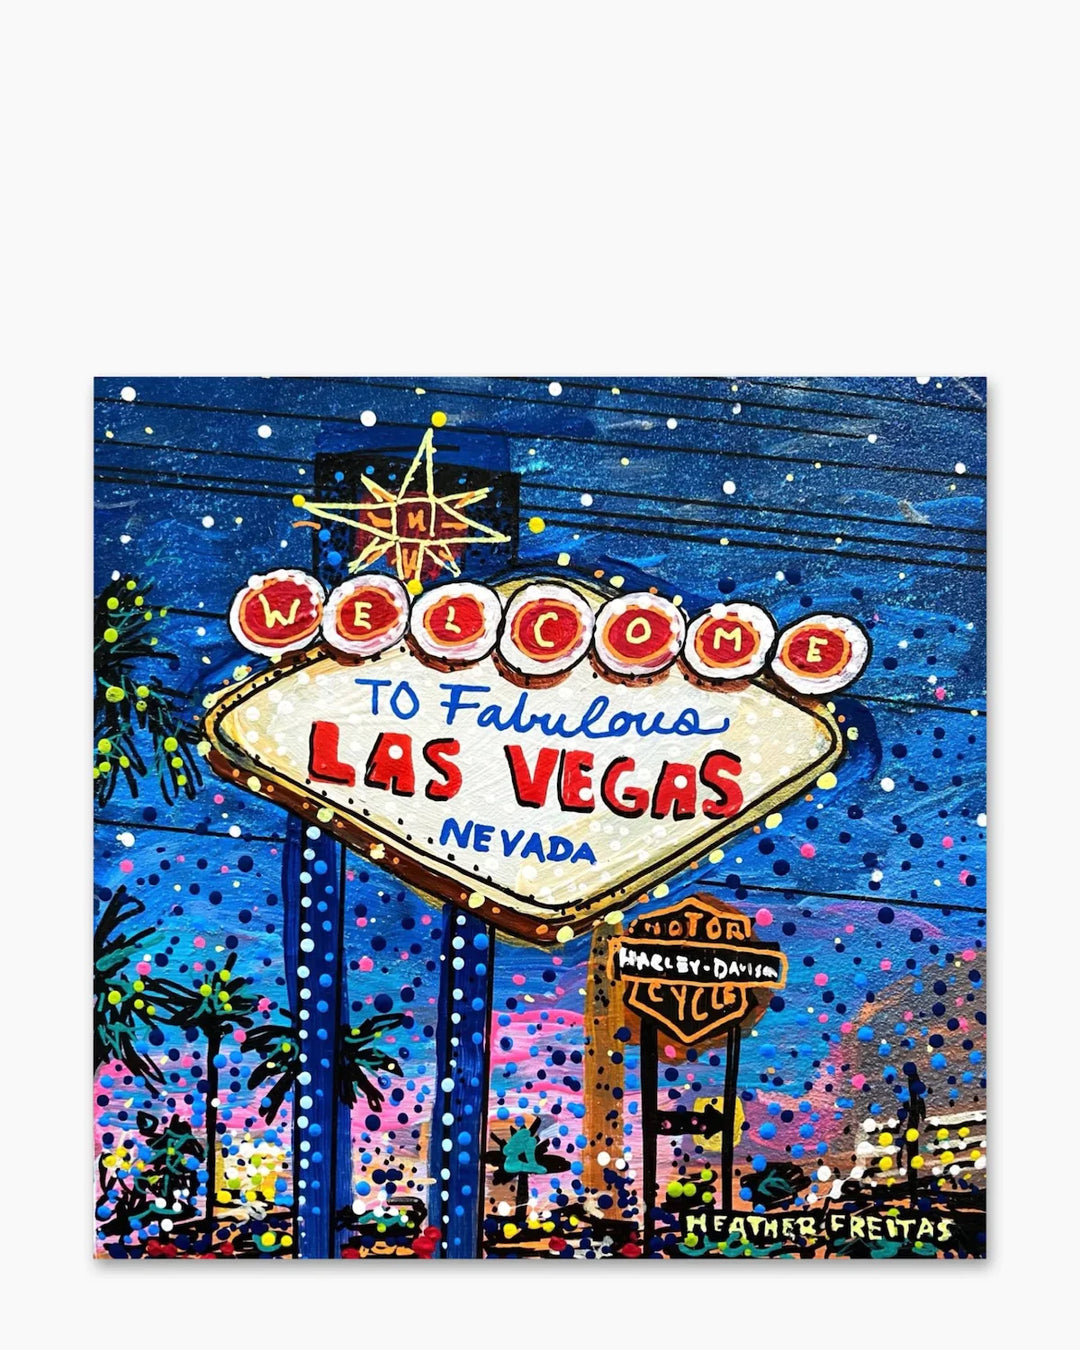 Fabulous Las Vegas - Heather Freitas - fine art home deccor